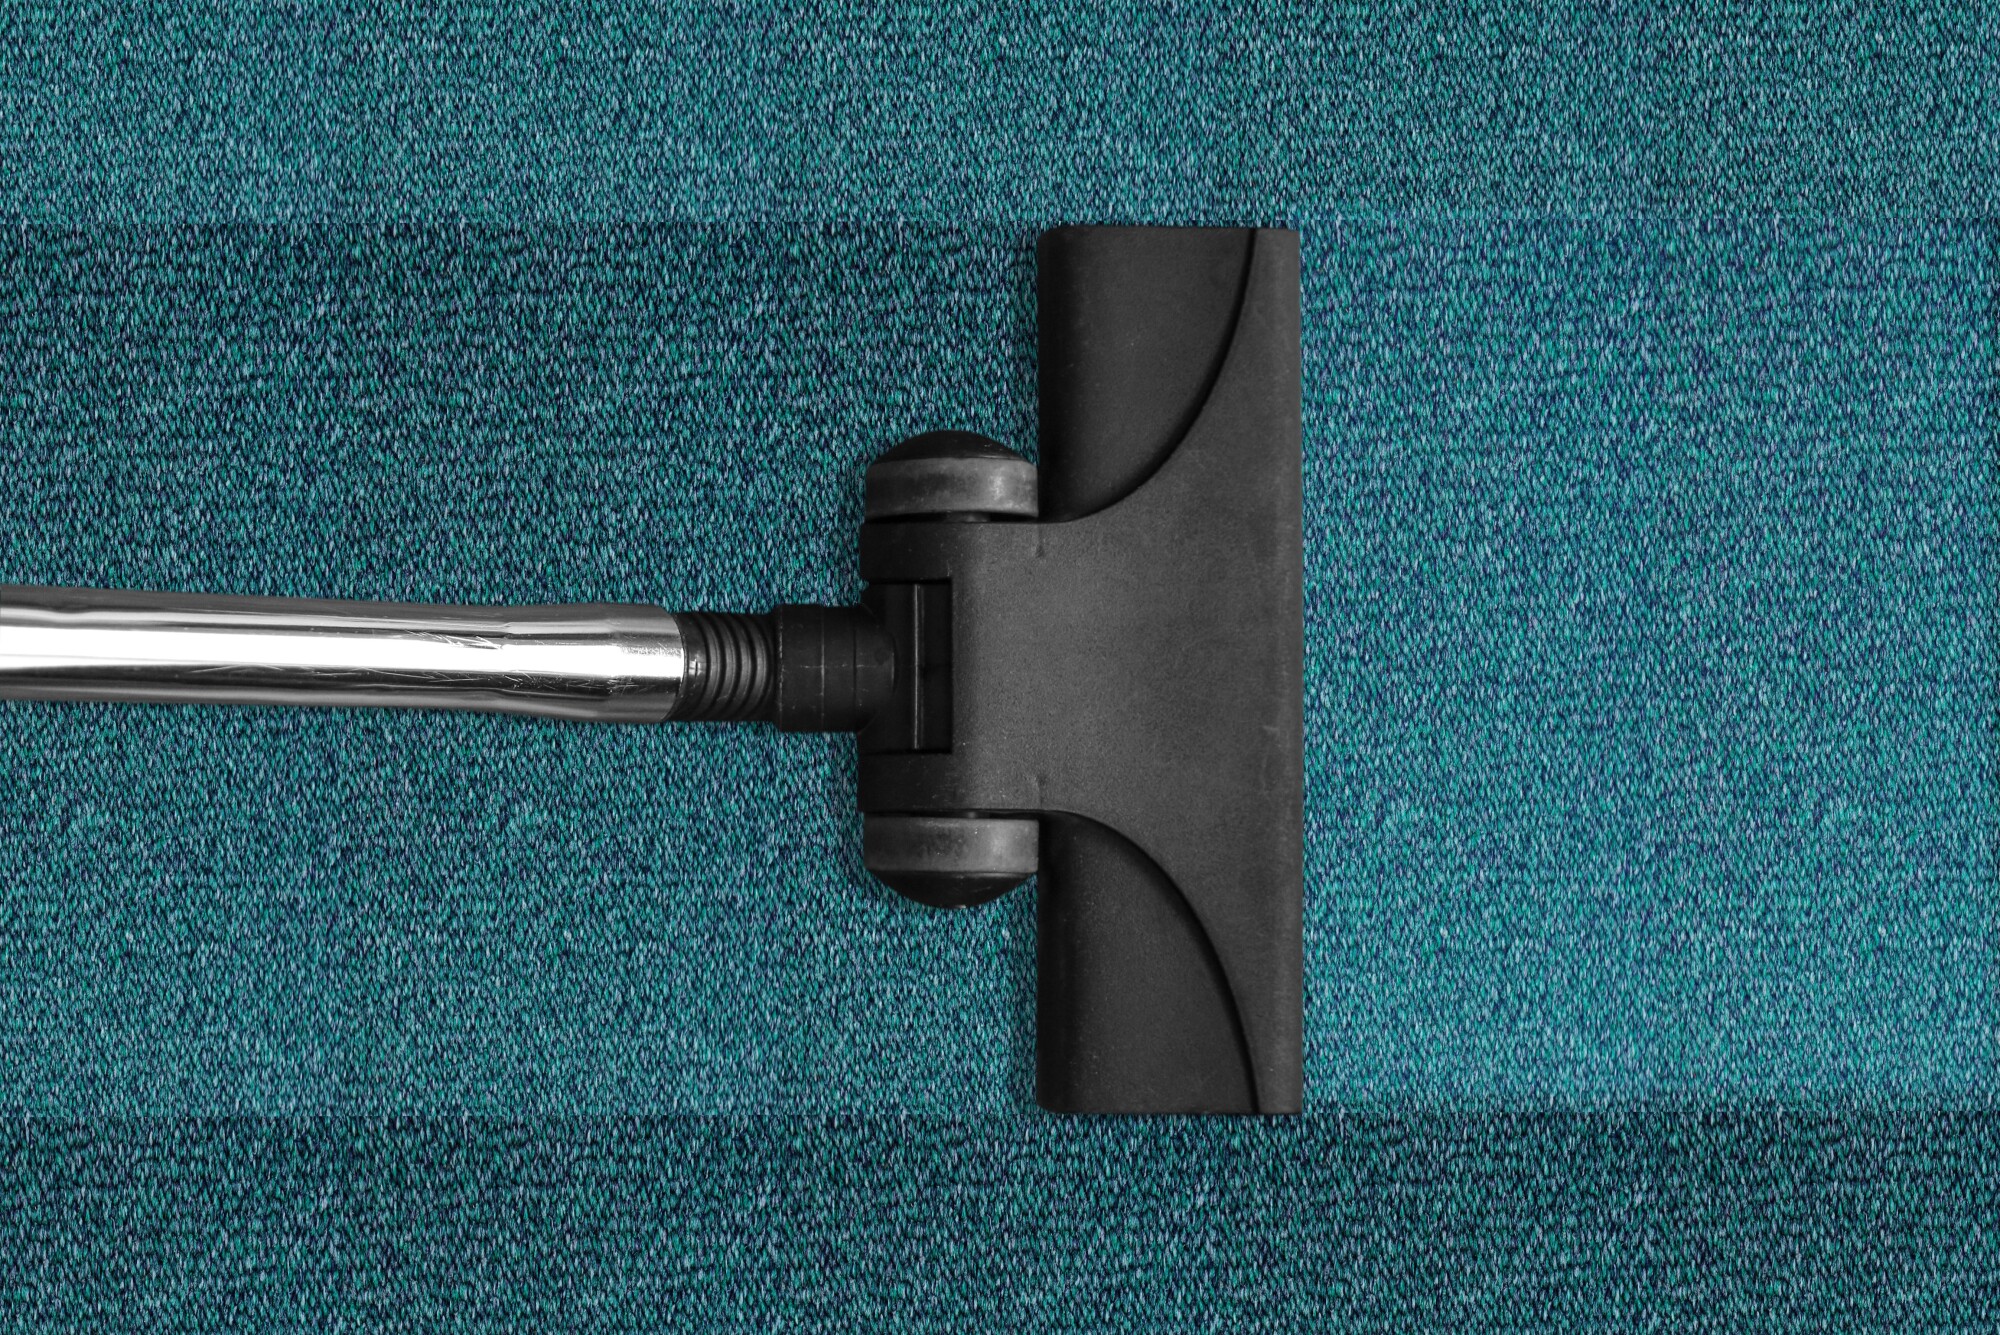 Tabla de calidad de alfombras: una guía de lo mejor y cómo proteger la suya